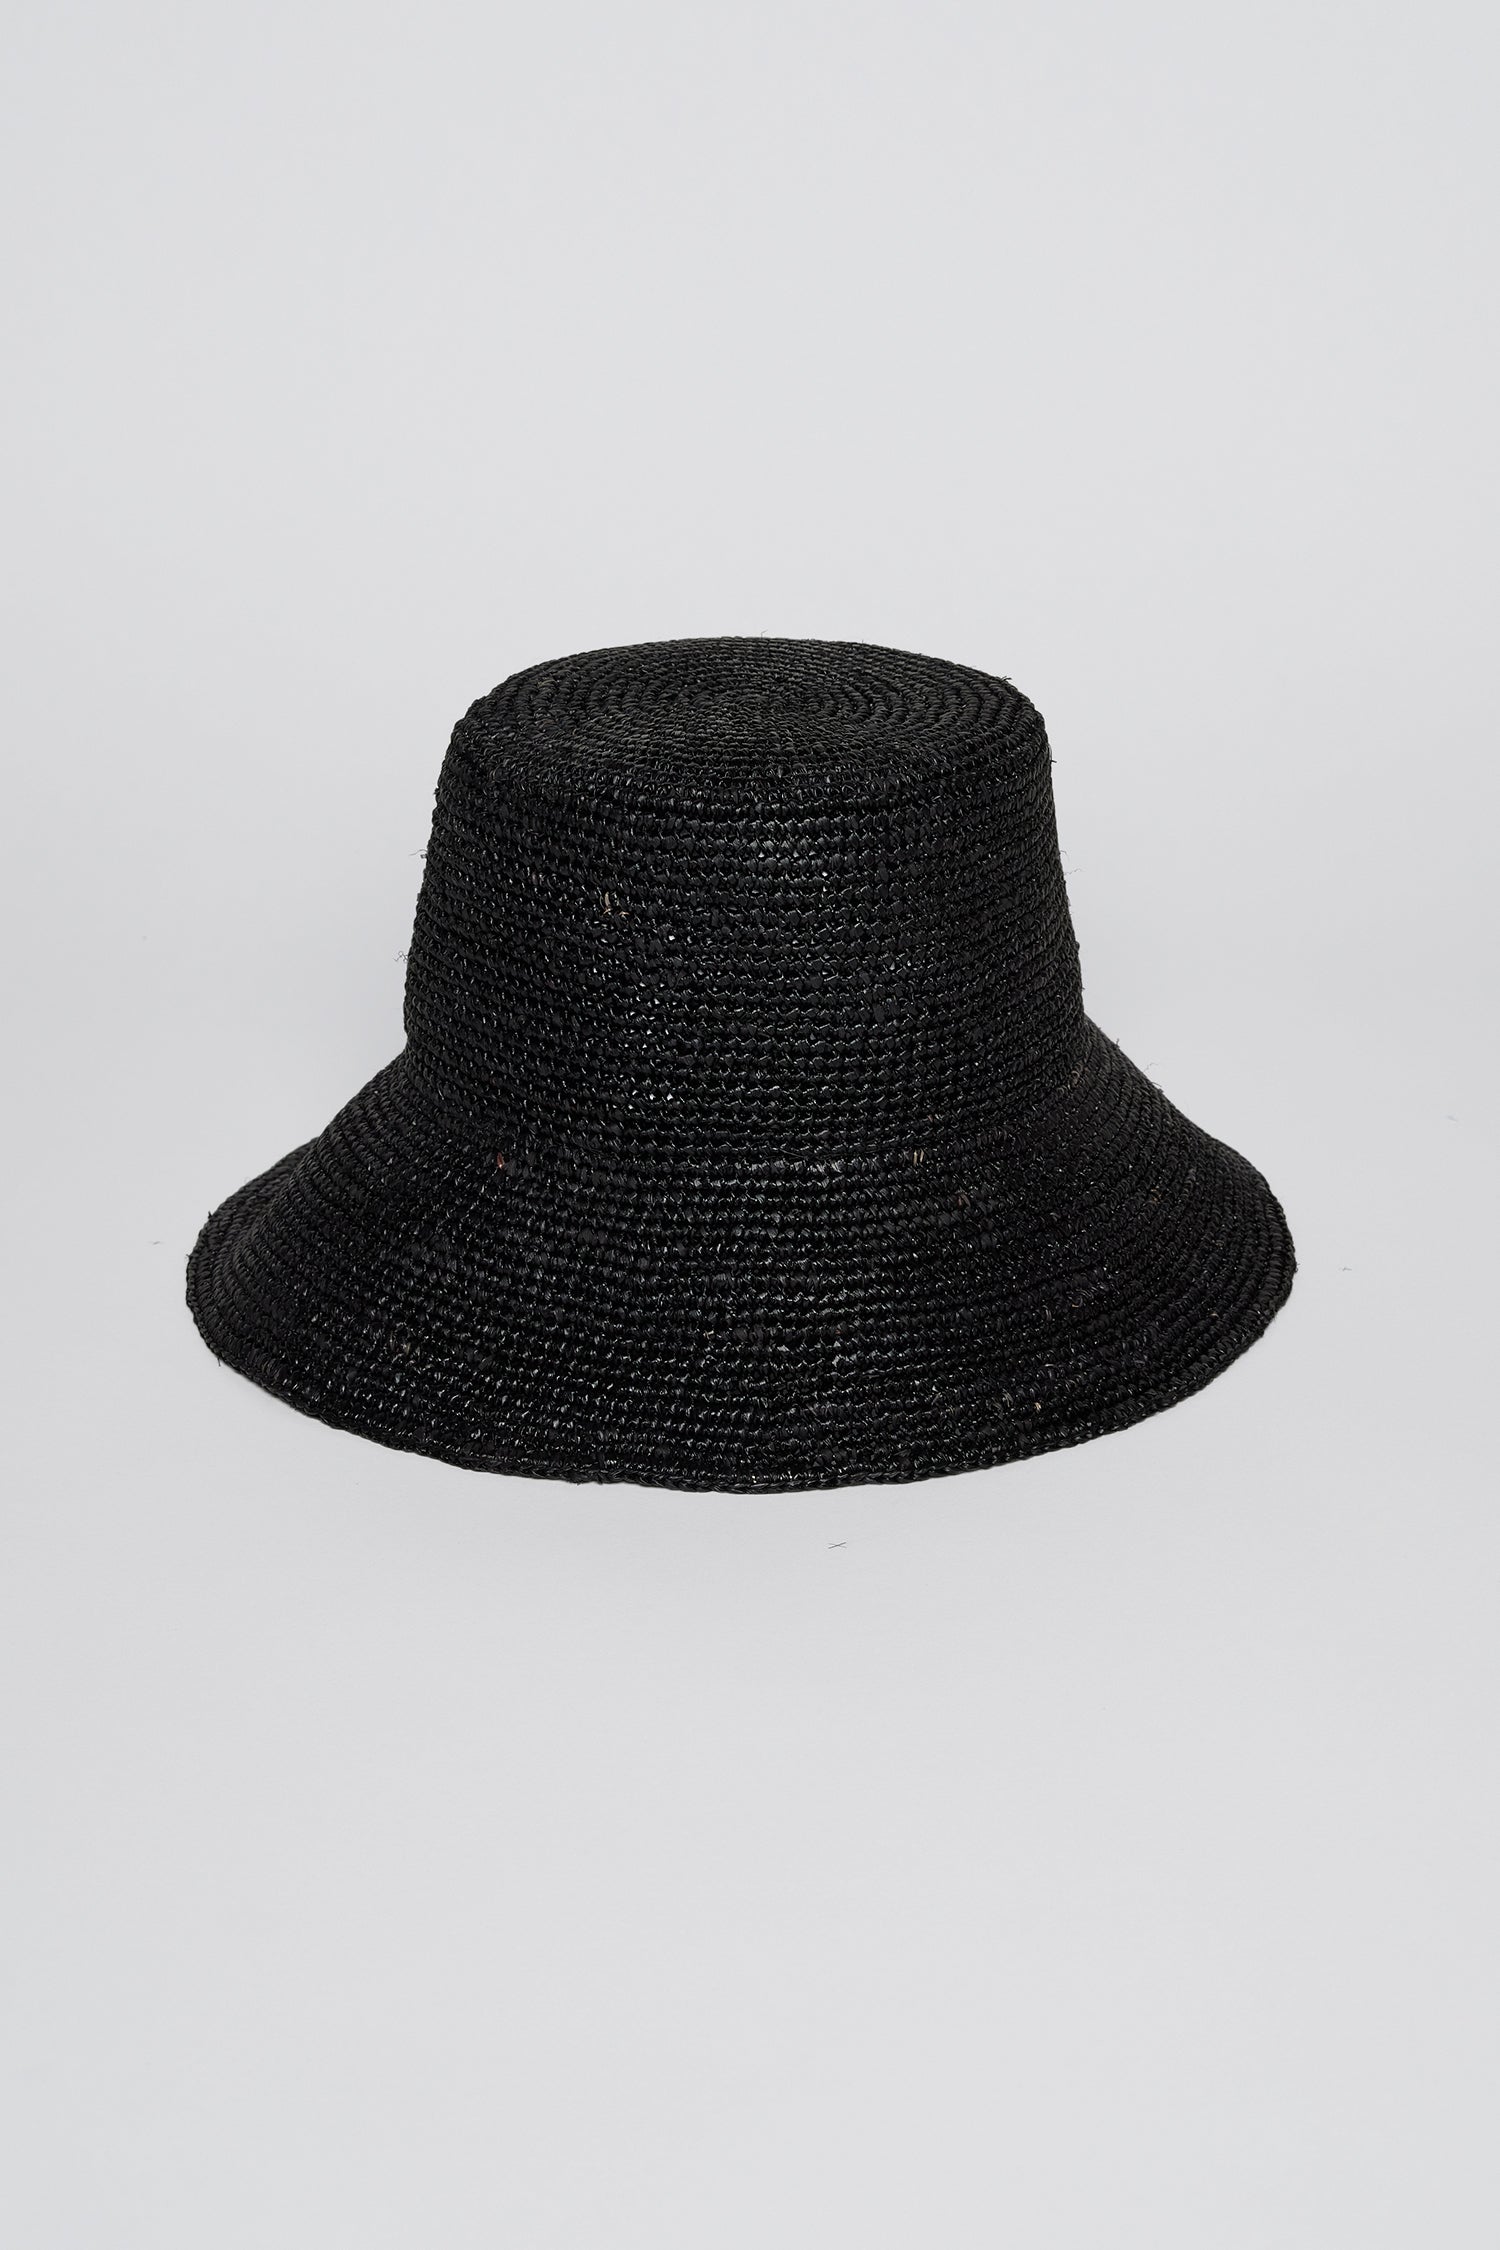   a Velvet by Graham & Spencer CHIC CROCHET BUCKET HAT on a white background. 